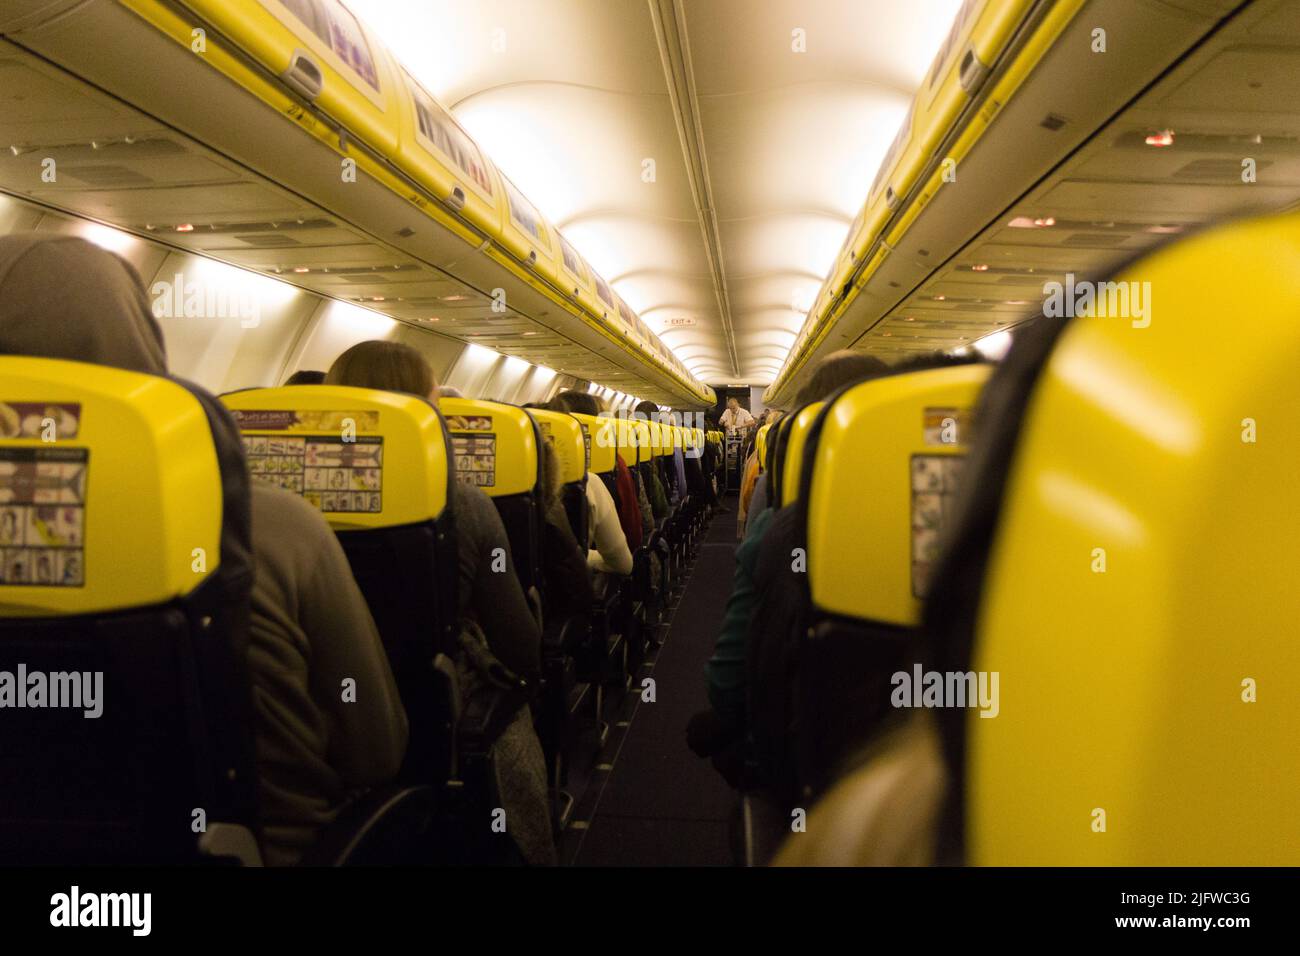 El pasillo y el interior de un avión embarcado. El avión es un Boeing 737-800 de Ryanair. Foto de stock